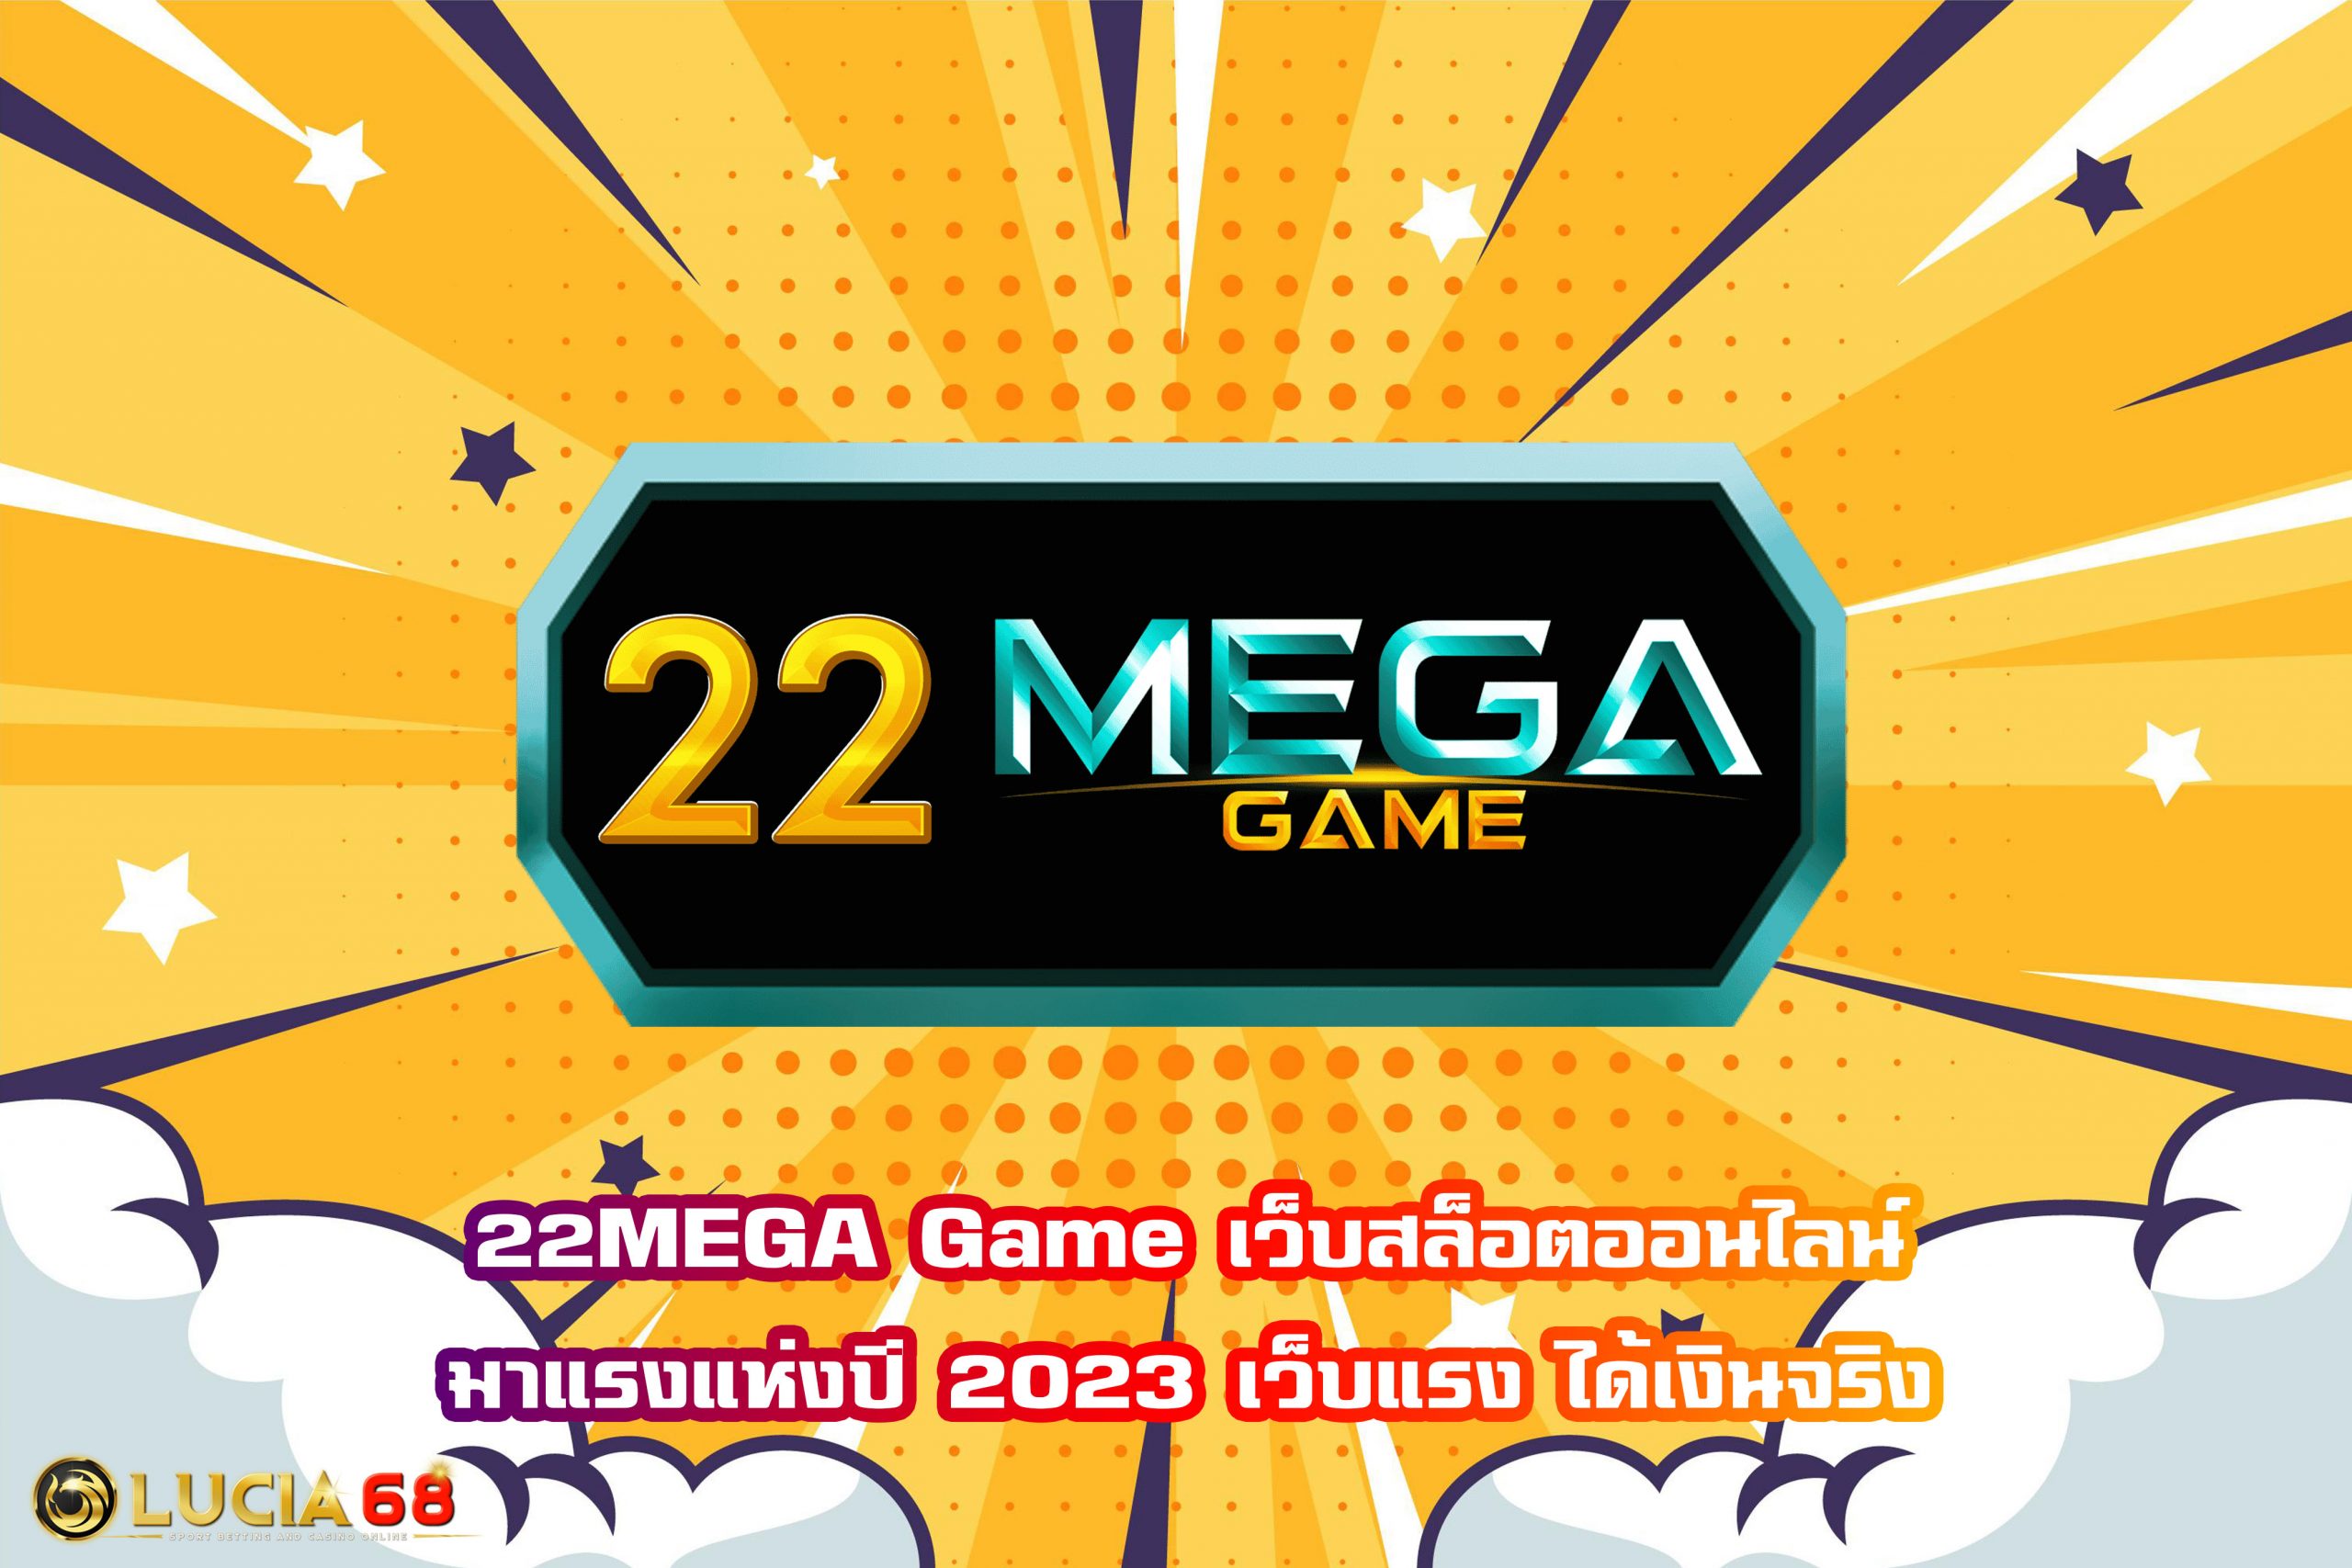 22MEGA Game เว็บสล็อตออนไลน์มาแรงแห่งปี 2023 เว็บแรง ได้เงินจริง